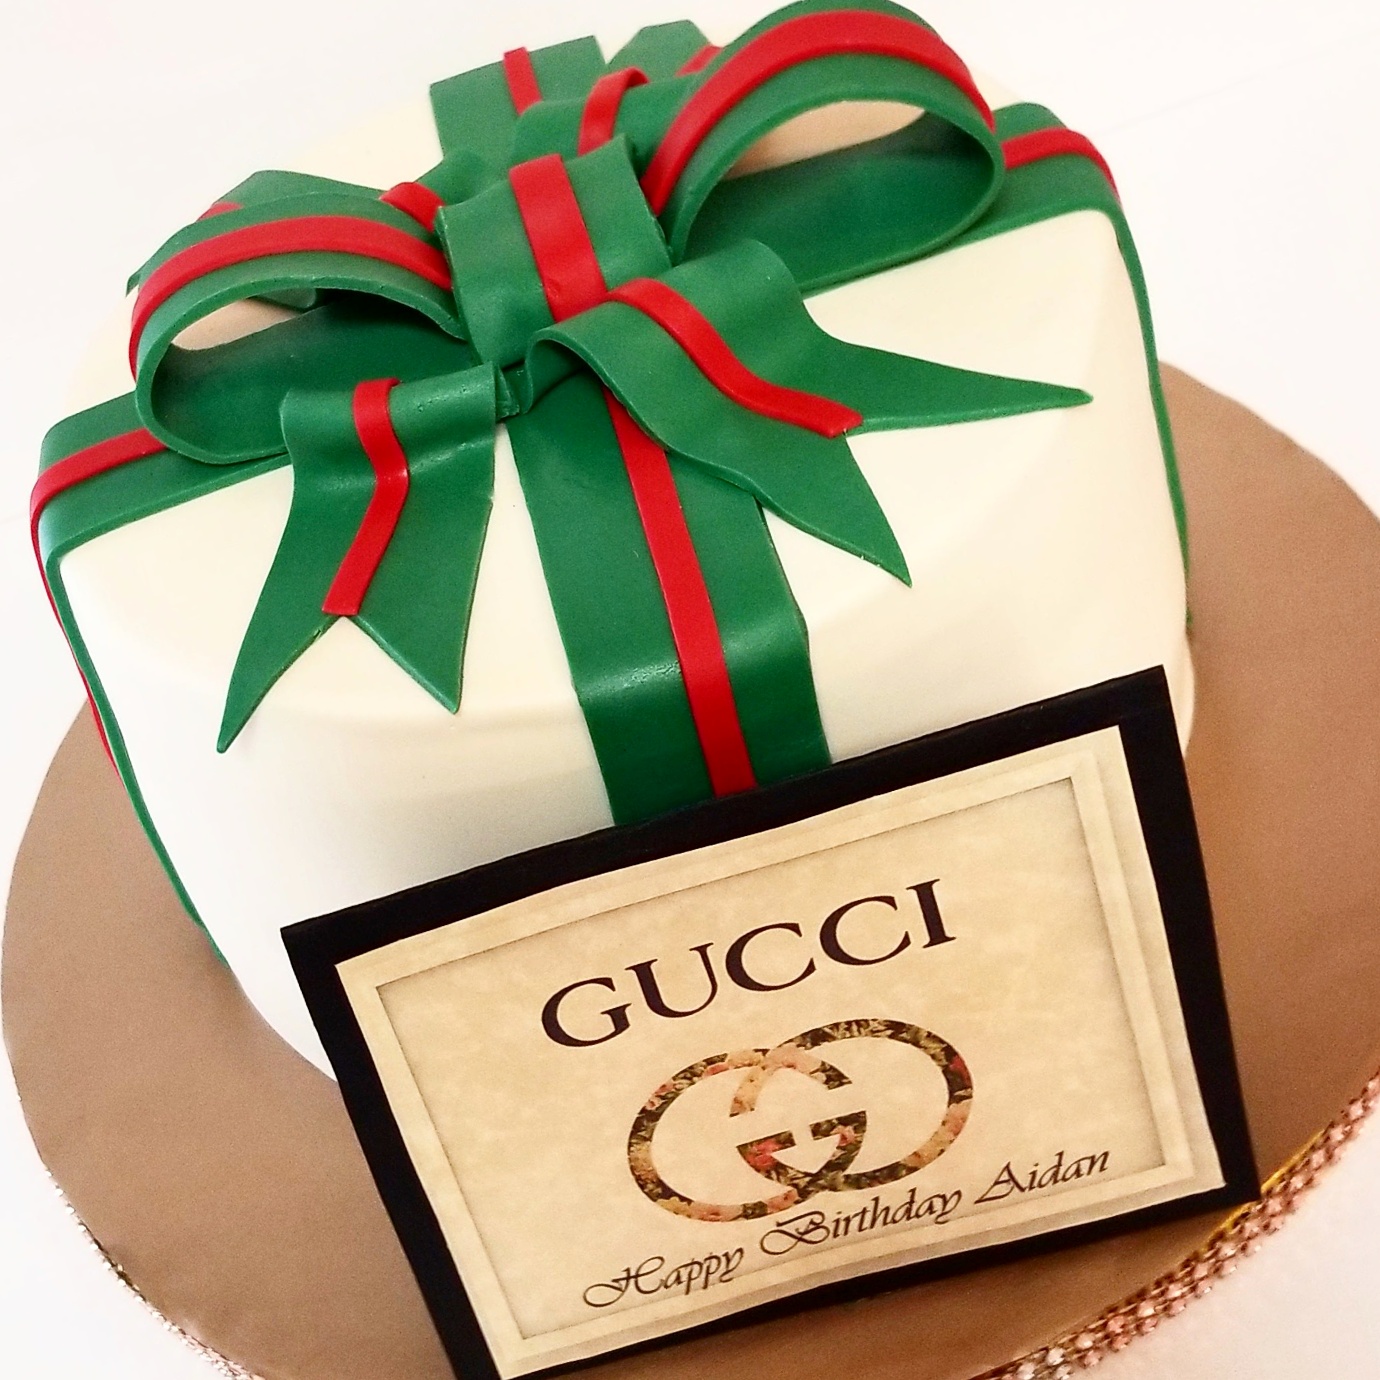 It's Gucci!❤💚